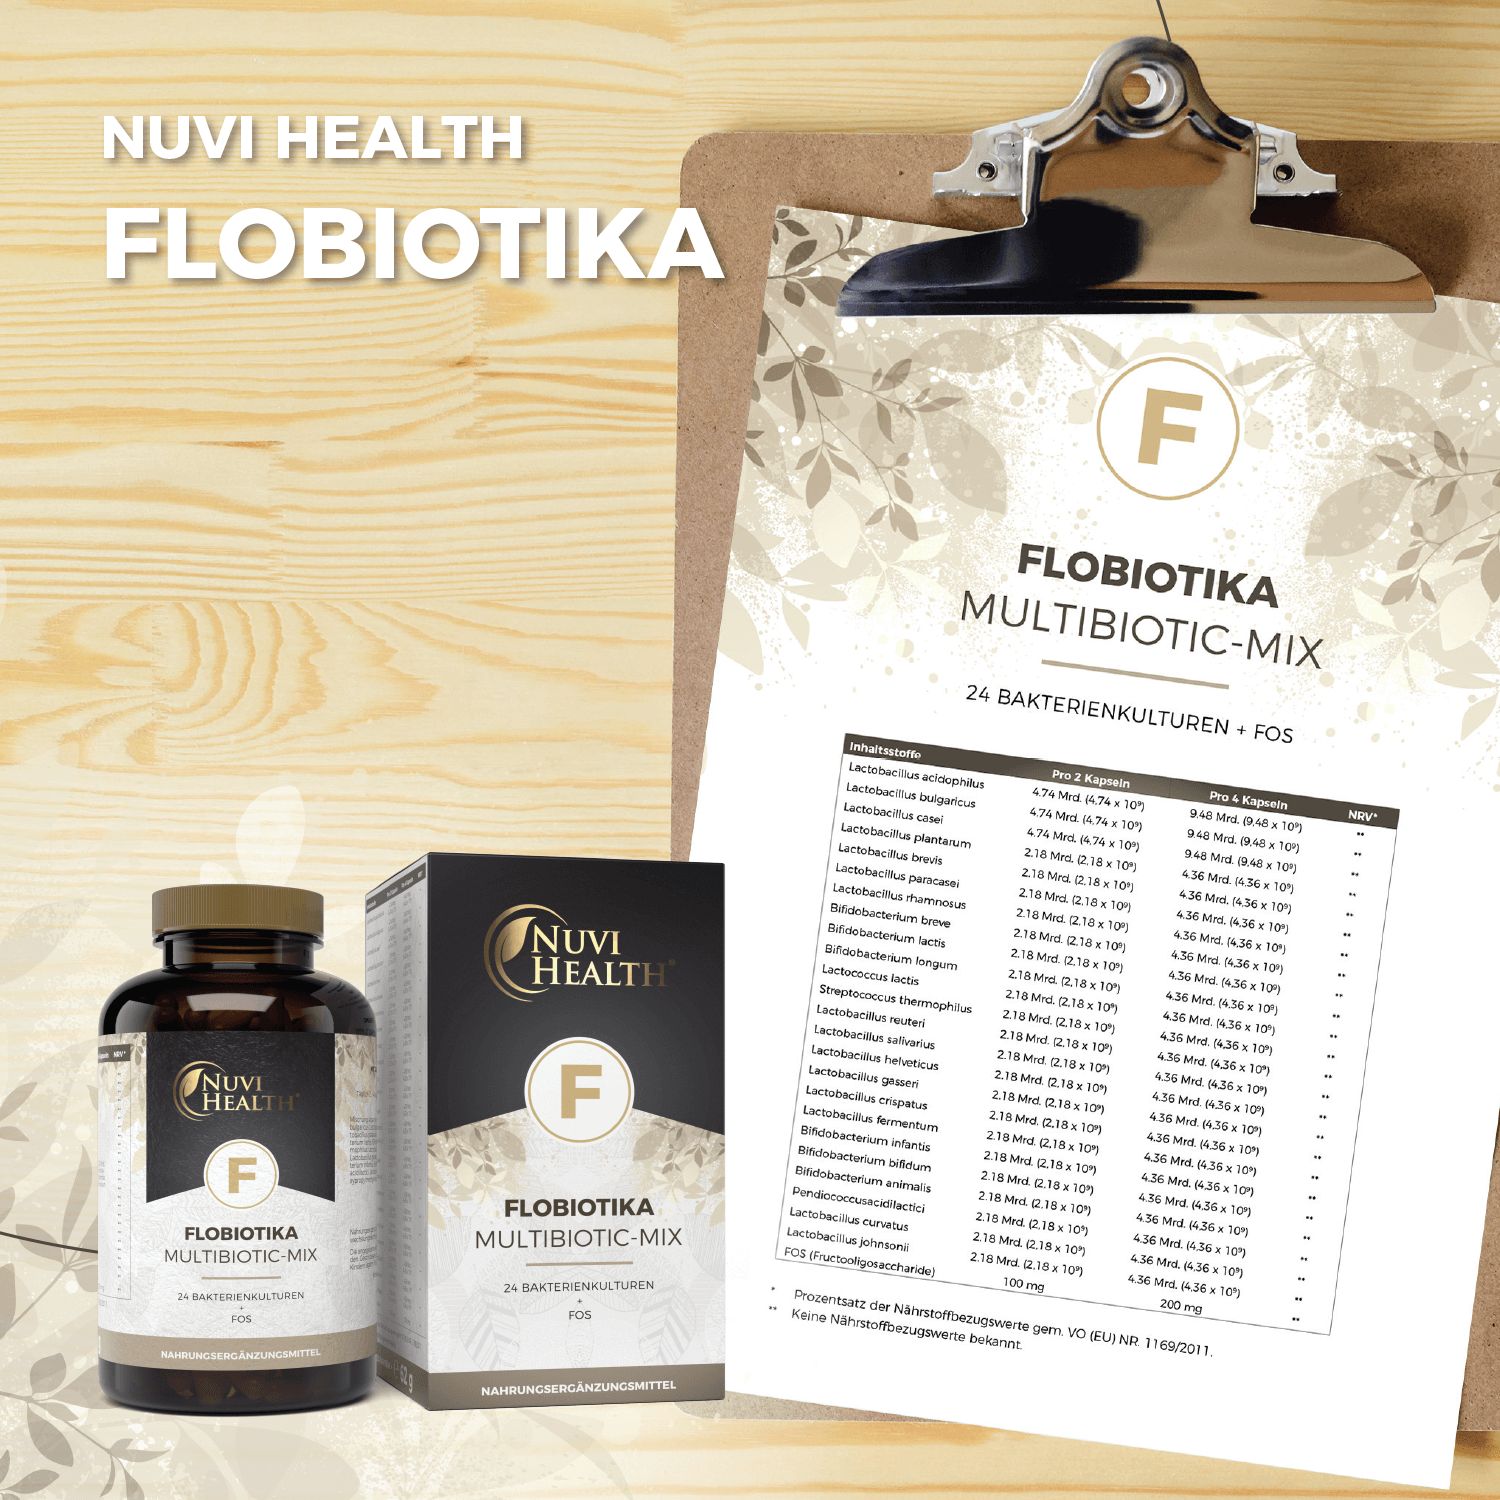 Nuvi Health Flobiotika